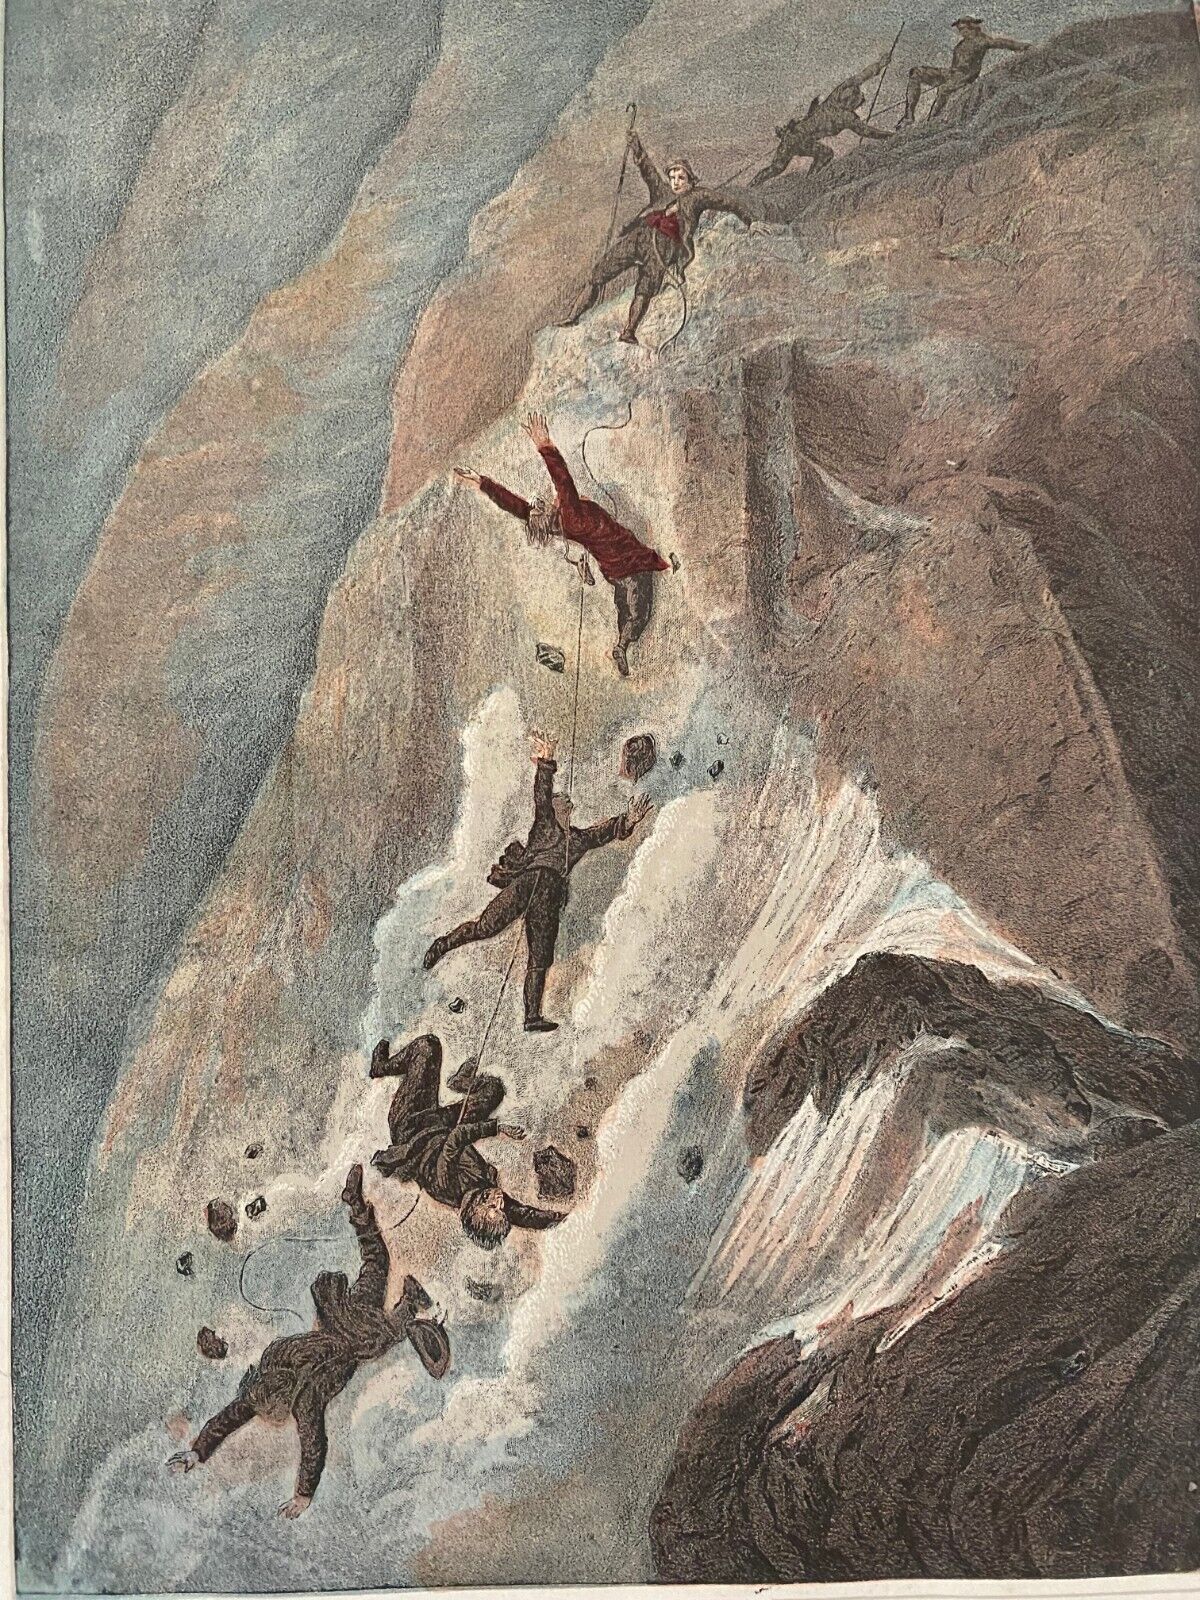 1867 Chromolithograph- Descending the Matterhorn 4 Climbers Fall to Their Deaths